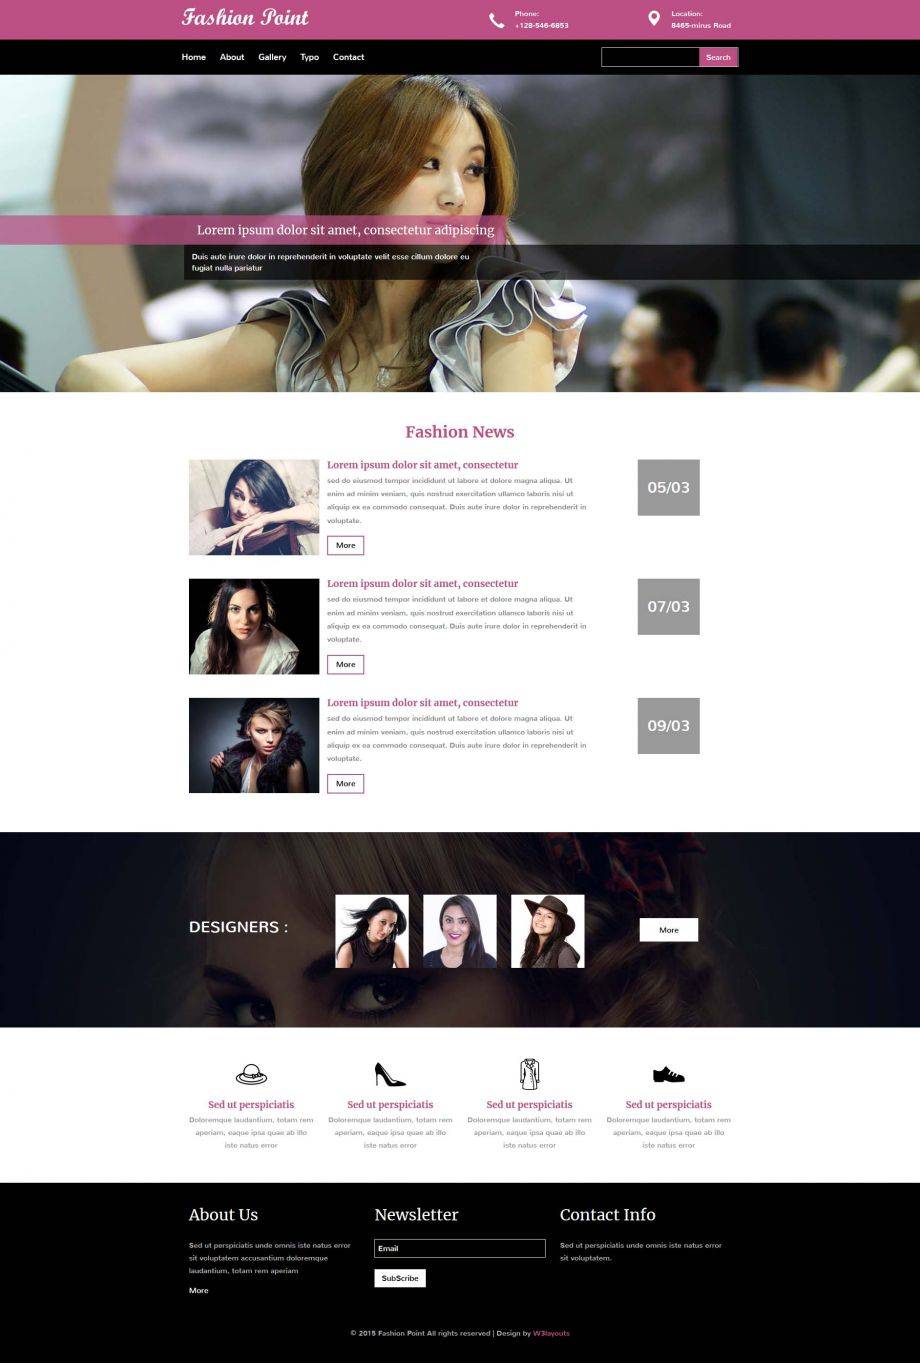 紫色简洁风格的时尚焦点服饰整站网站模板